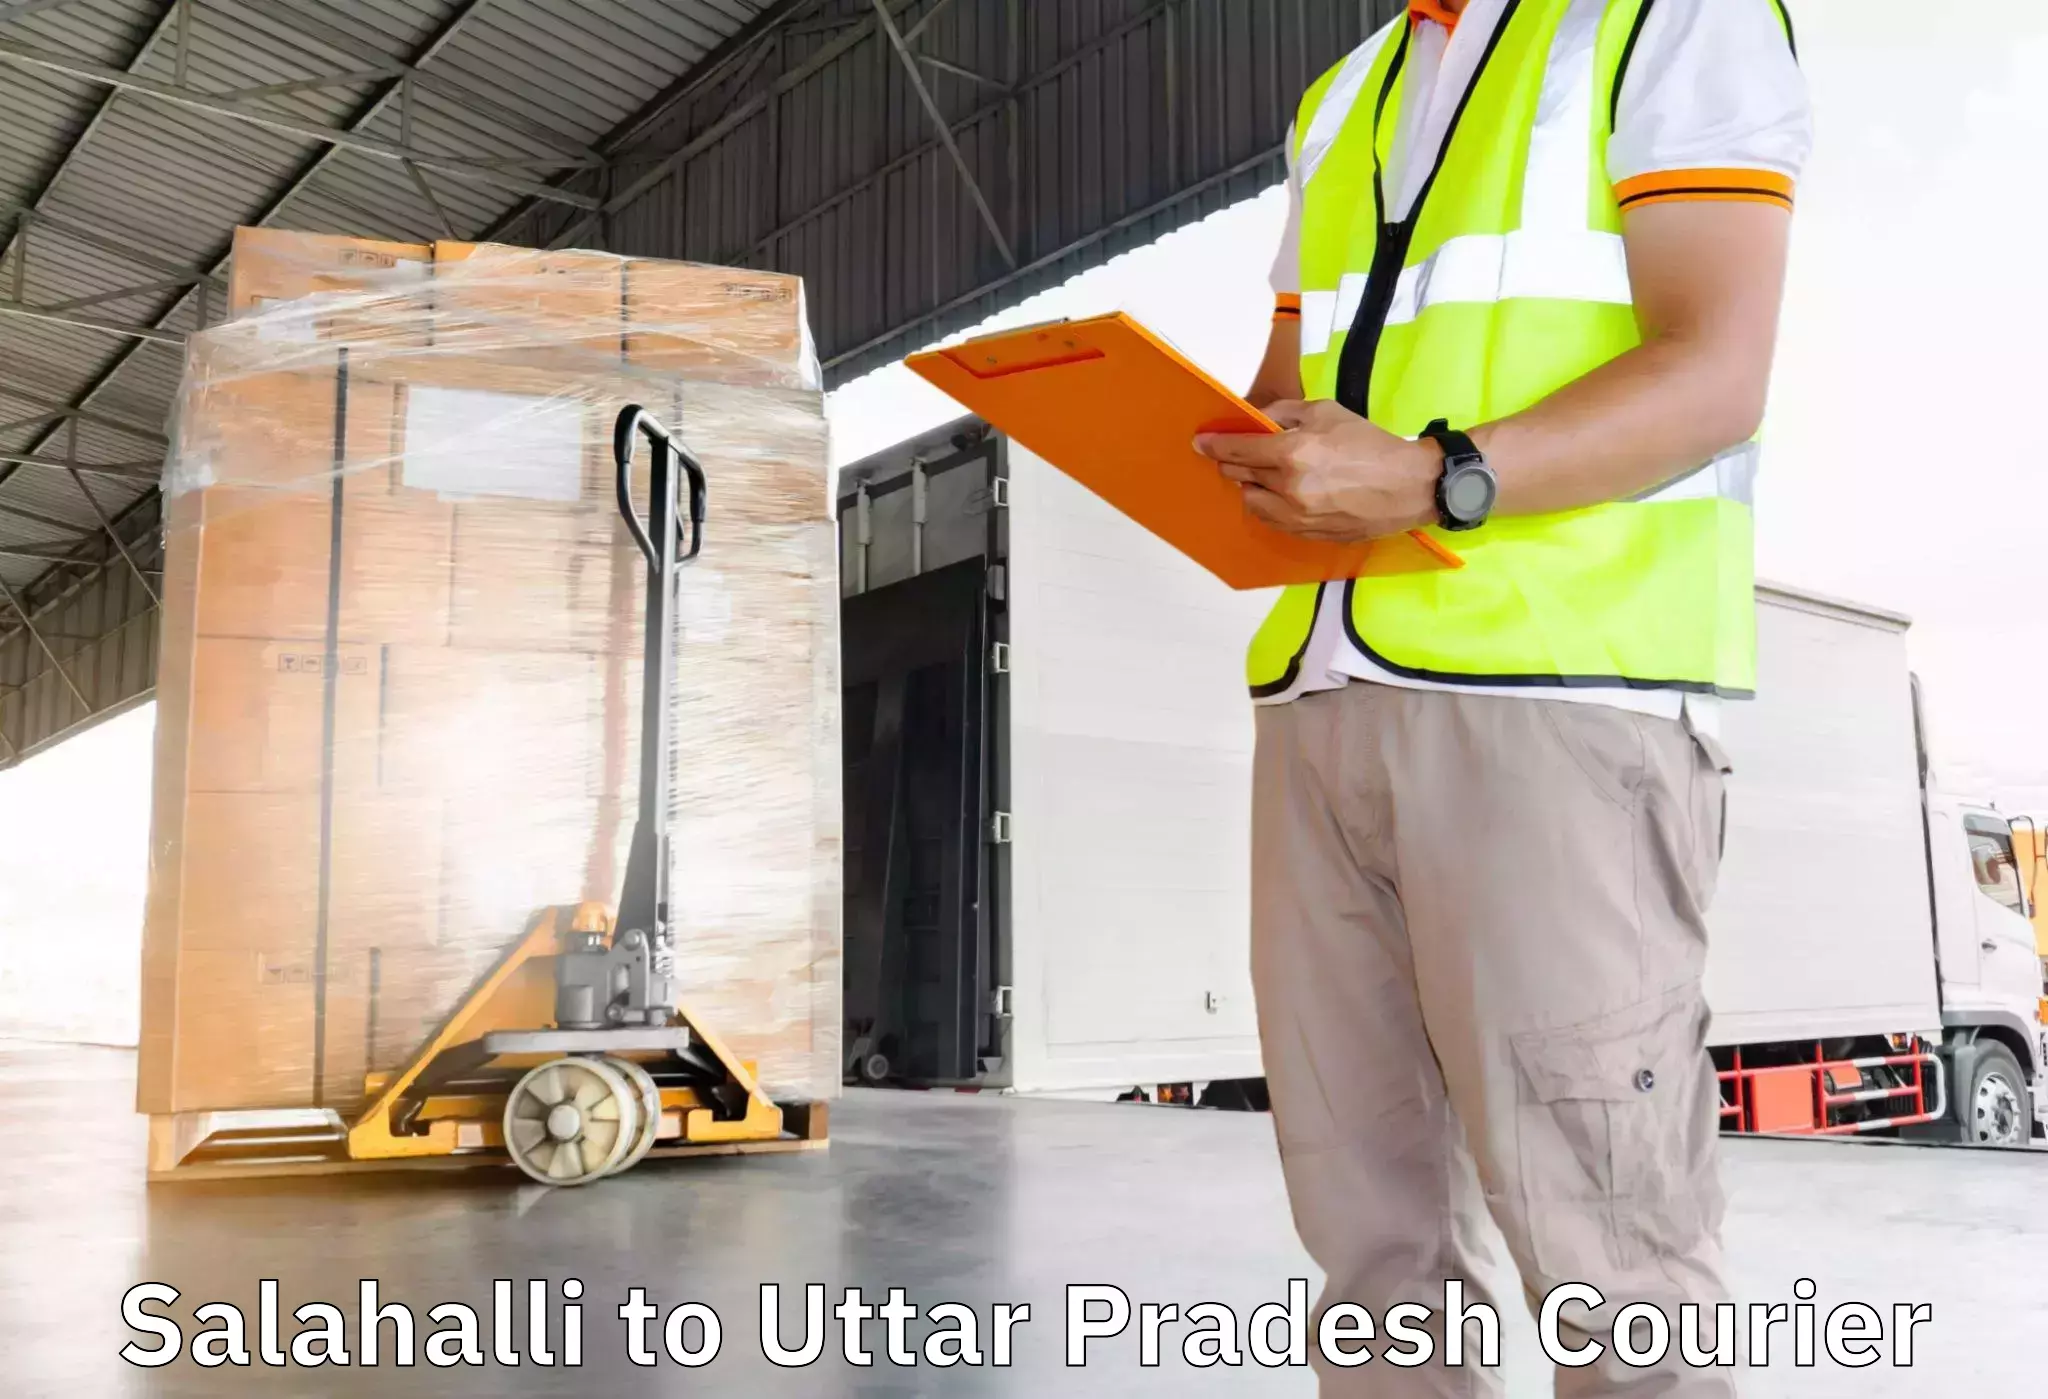 Professional furniture movers Salahalli to Chakia Chandauli